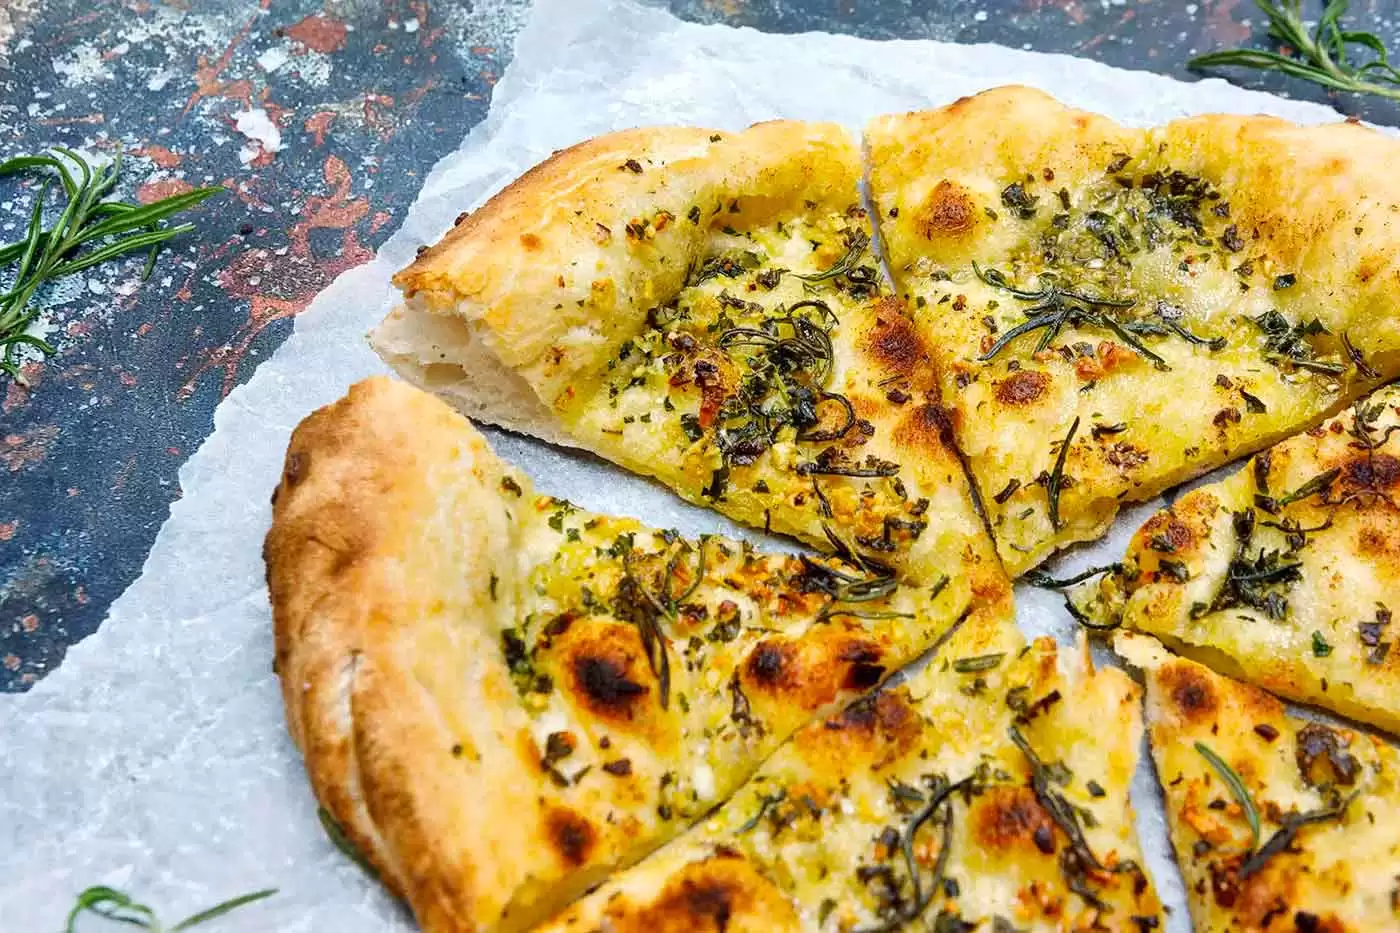 Já comeu pizza de pão de alho com queijo? Apenas 10 minutos de cozimento da pizza o deixarão no paraíso com queijo e alho.